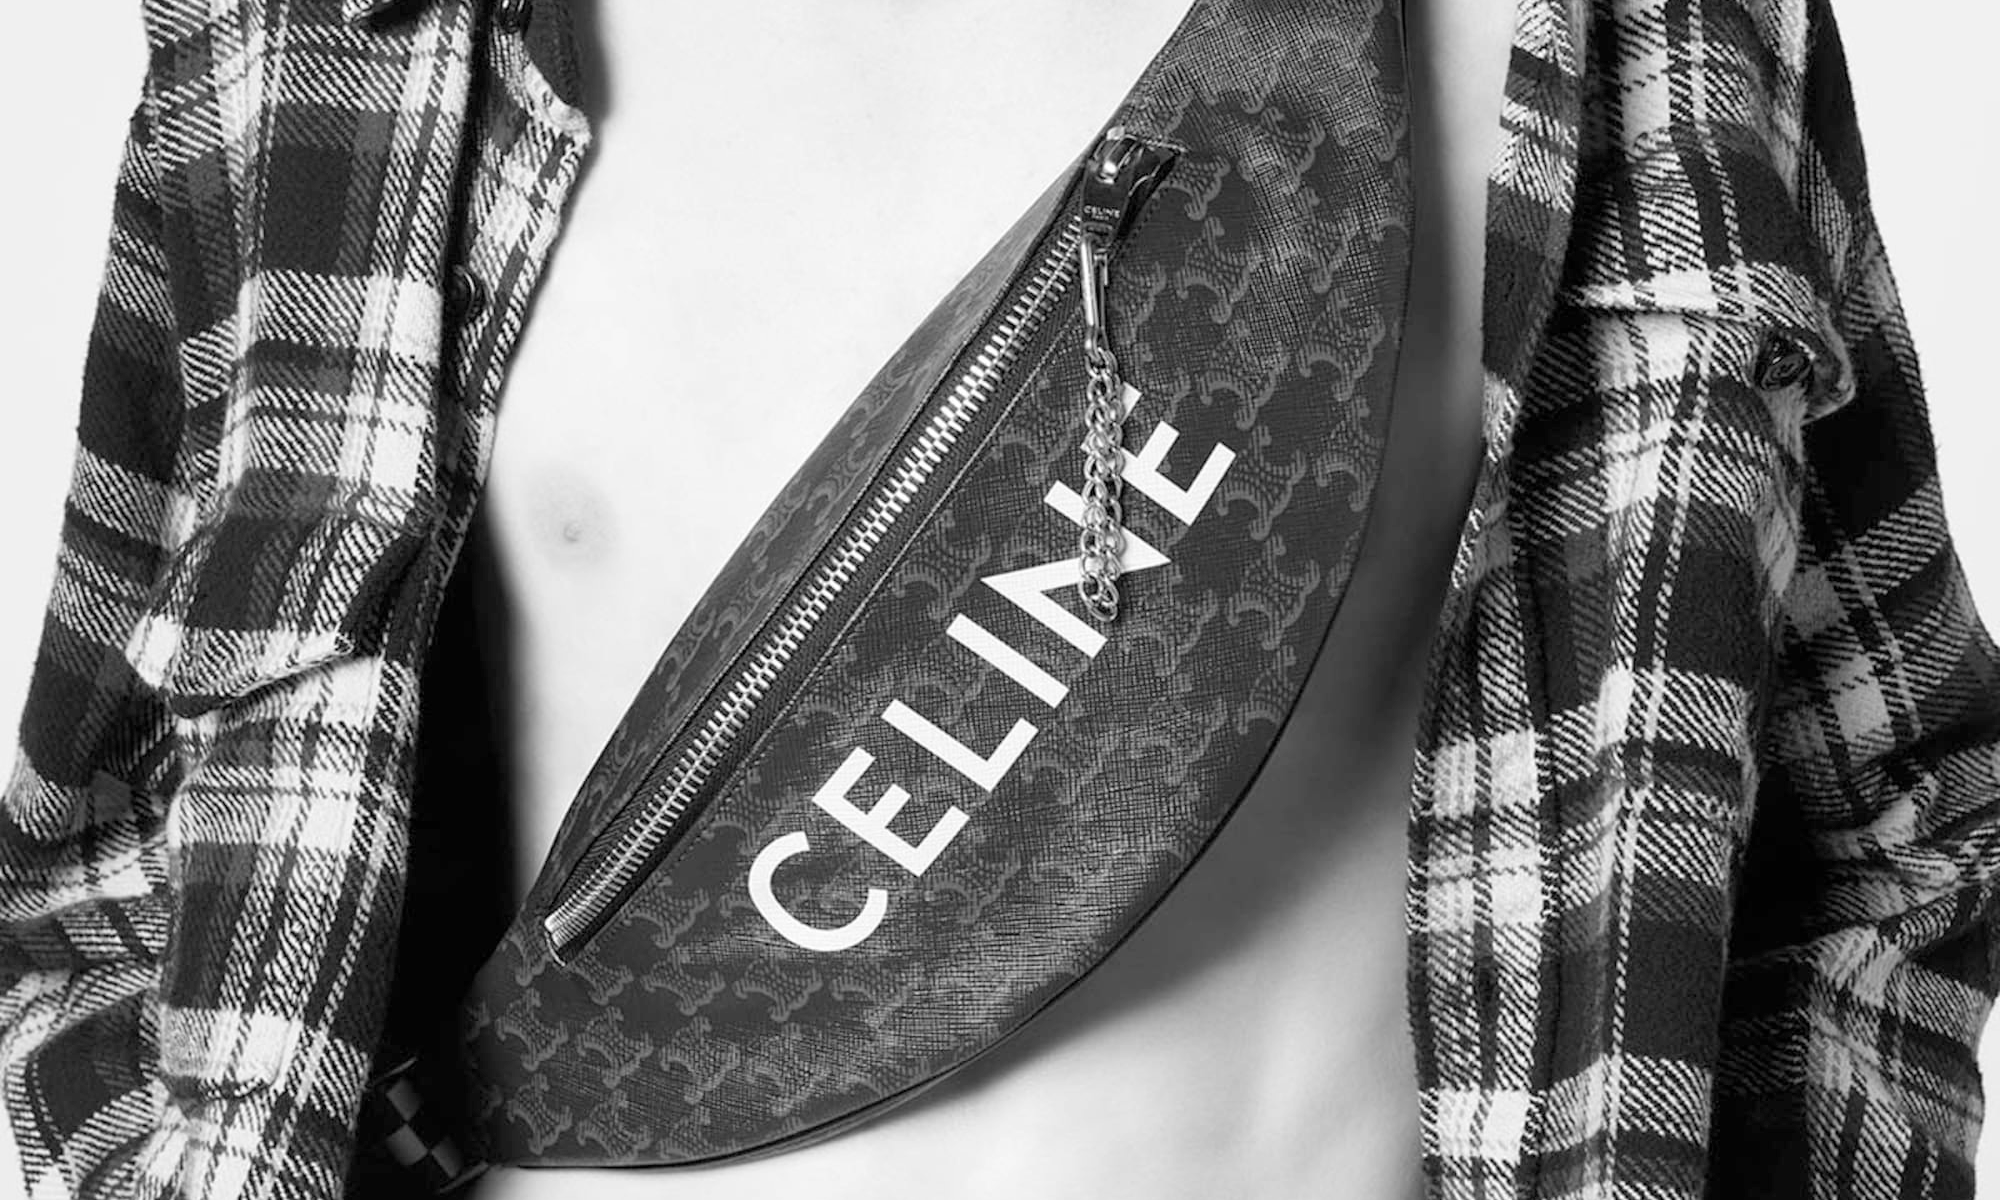 CELINE Homme 推出「Monochrome」胶囊系列